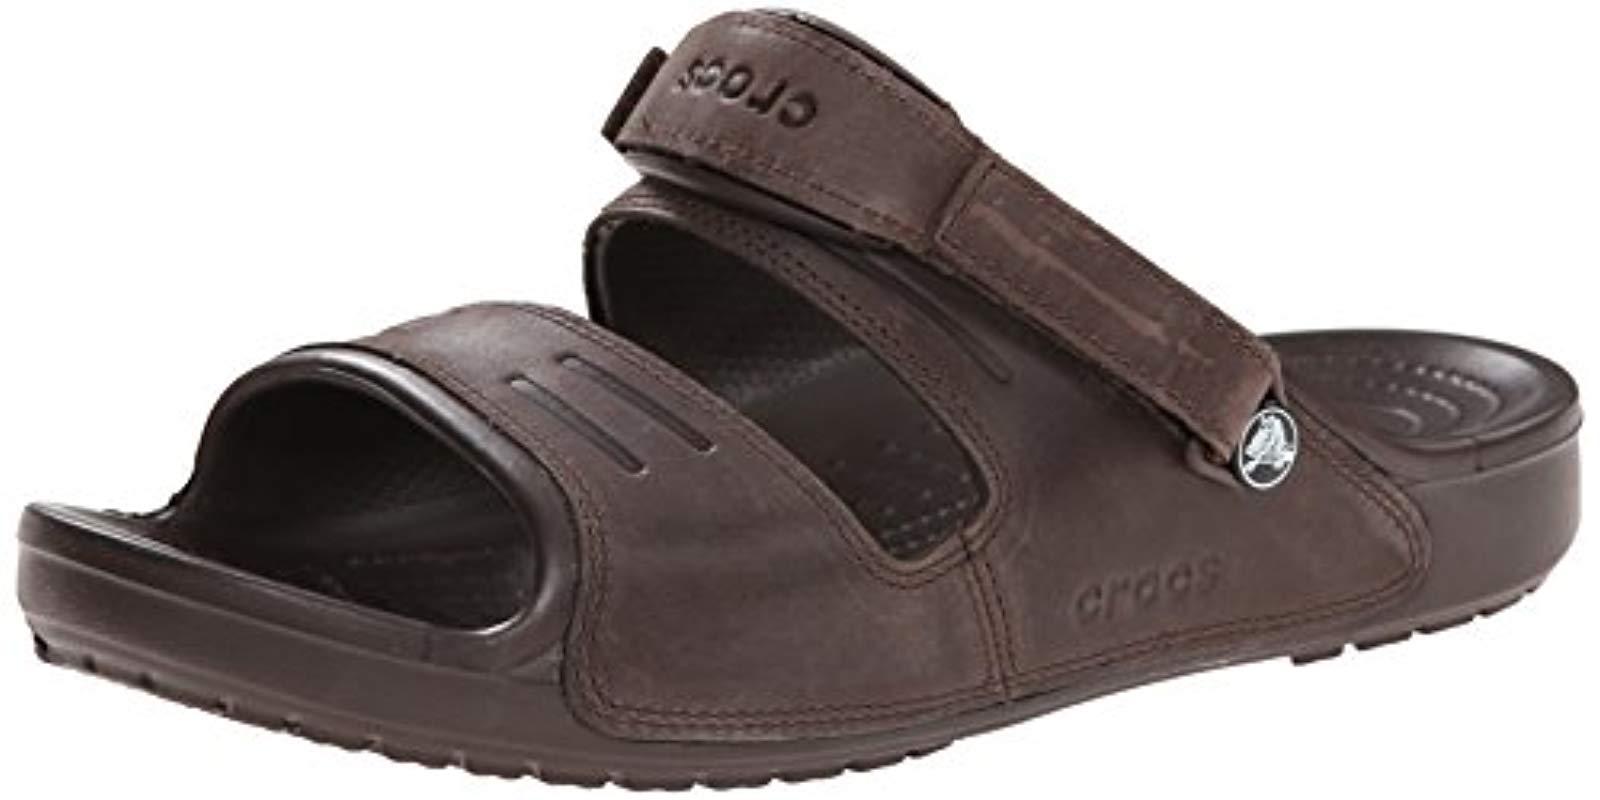 crocs yukon two strap sandal